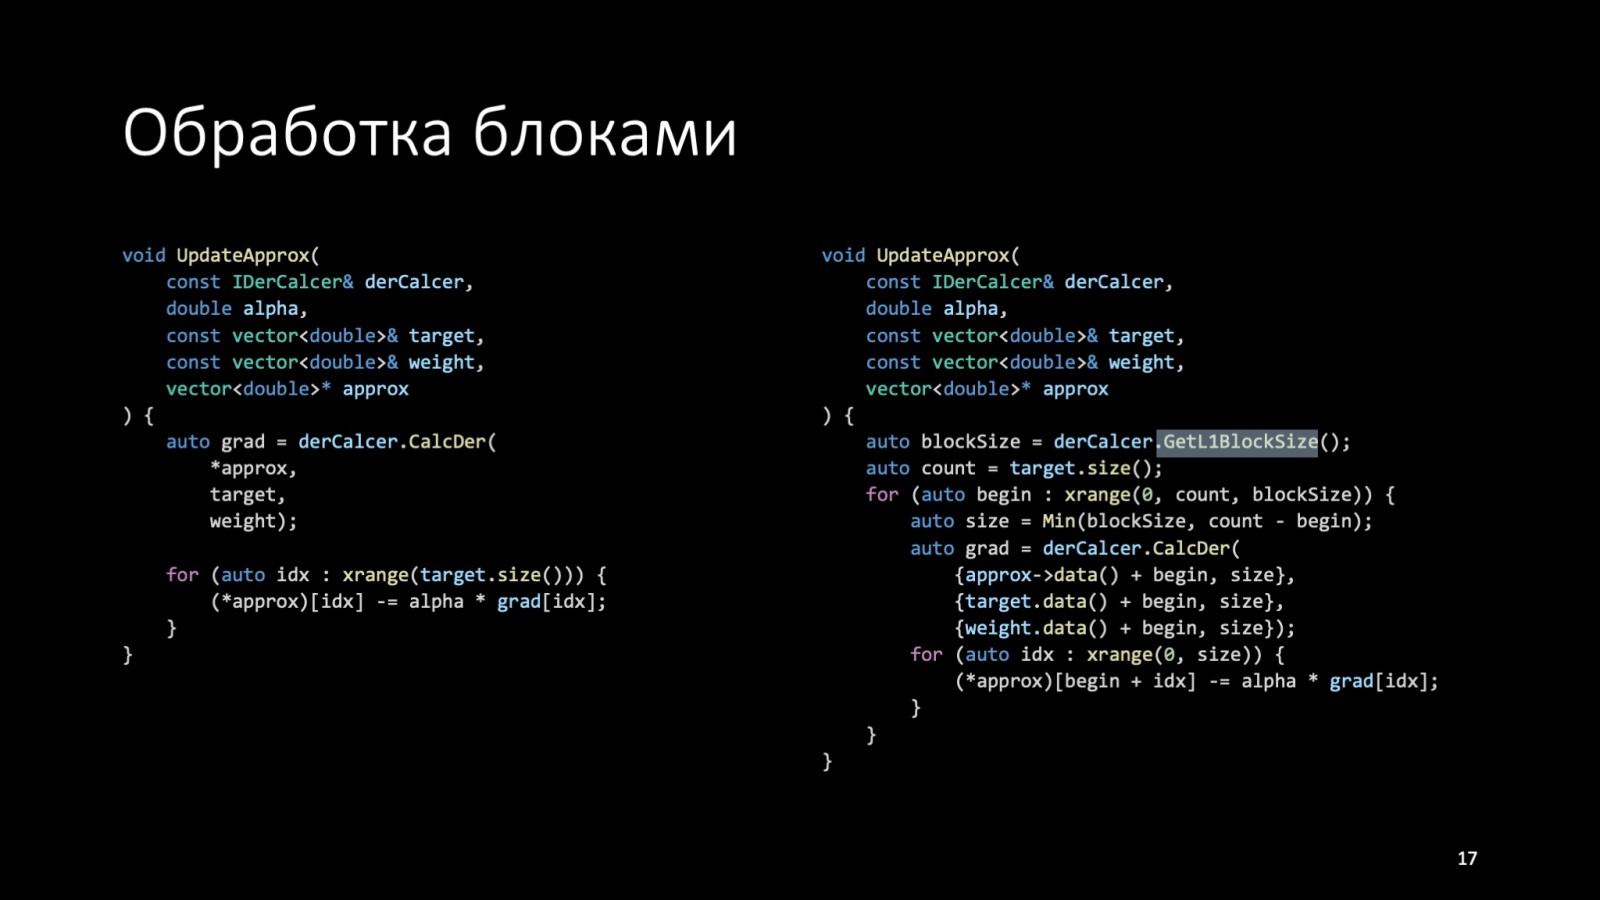 Оптимизация C++: совмещаем скорость и высокий уровень. Доклад Яндекса - 17